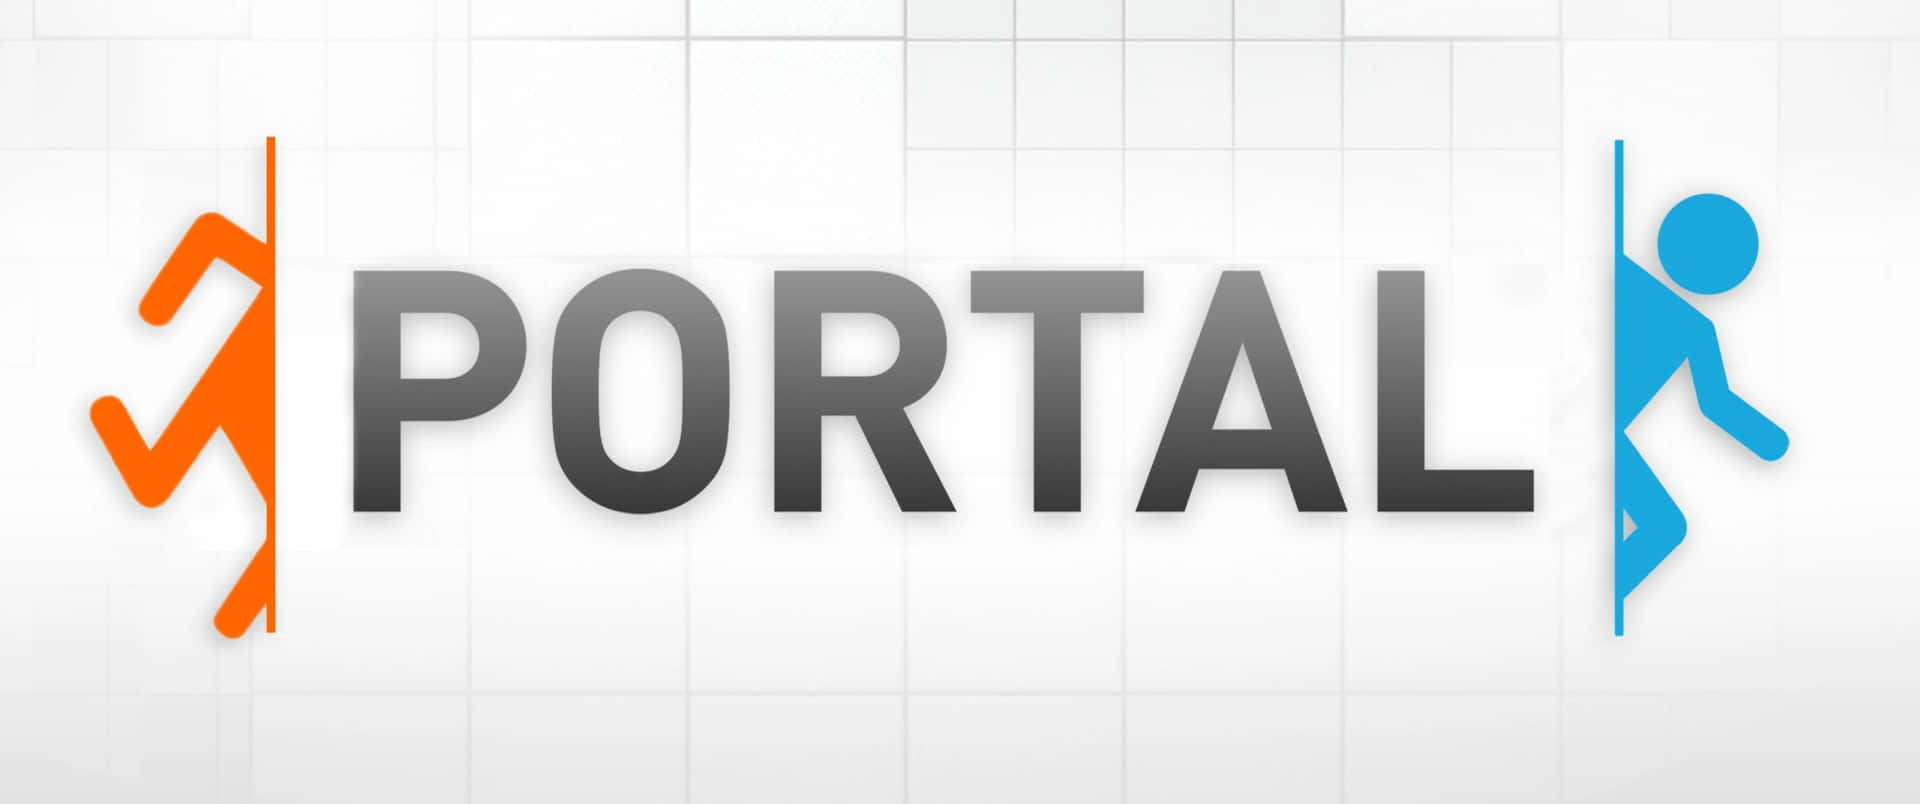 Portal2 - Sfondo Con Cubi E Sfere Astratte.